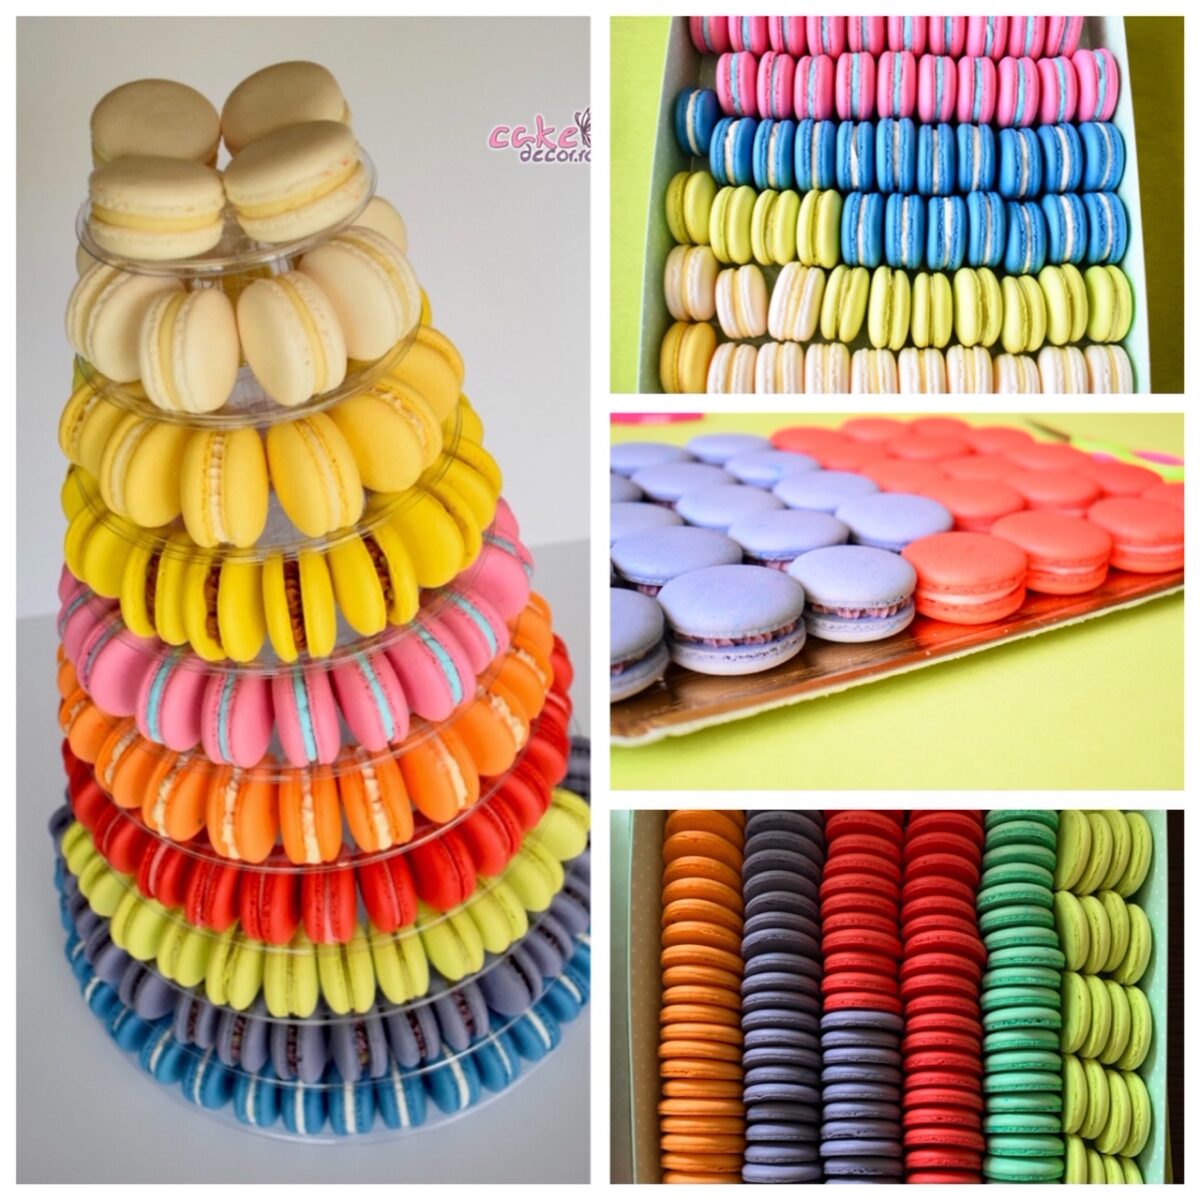 Macarons by Cristophe Felder